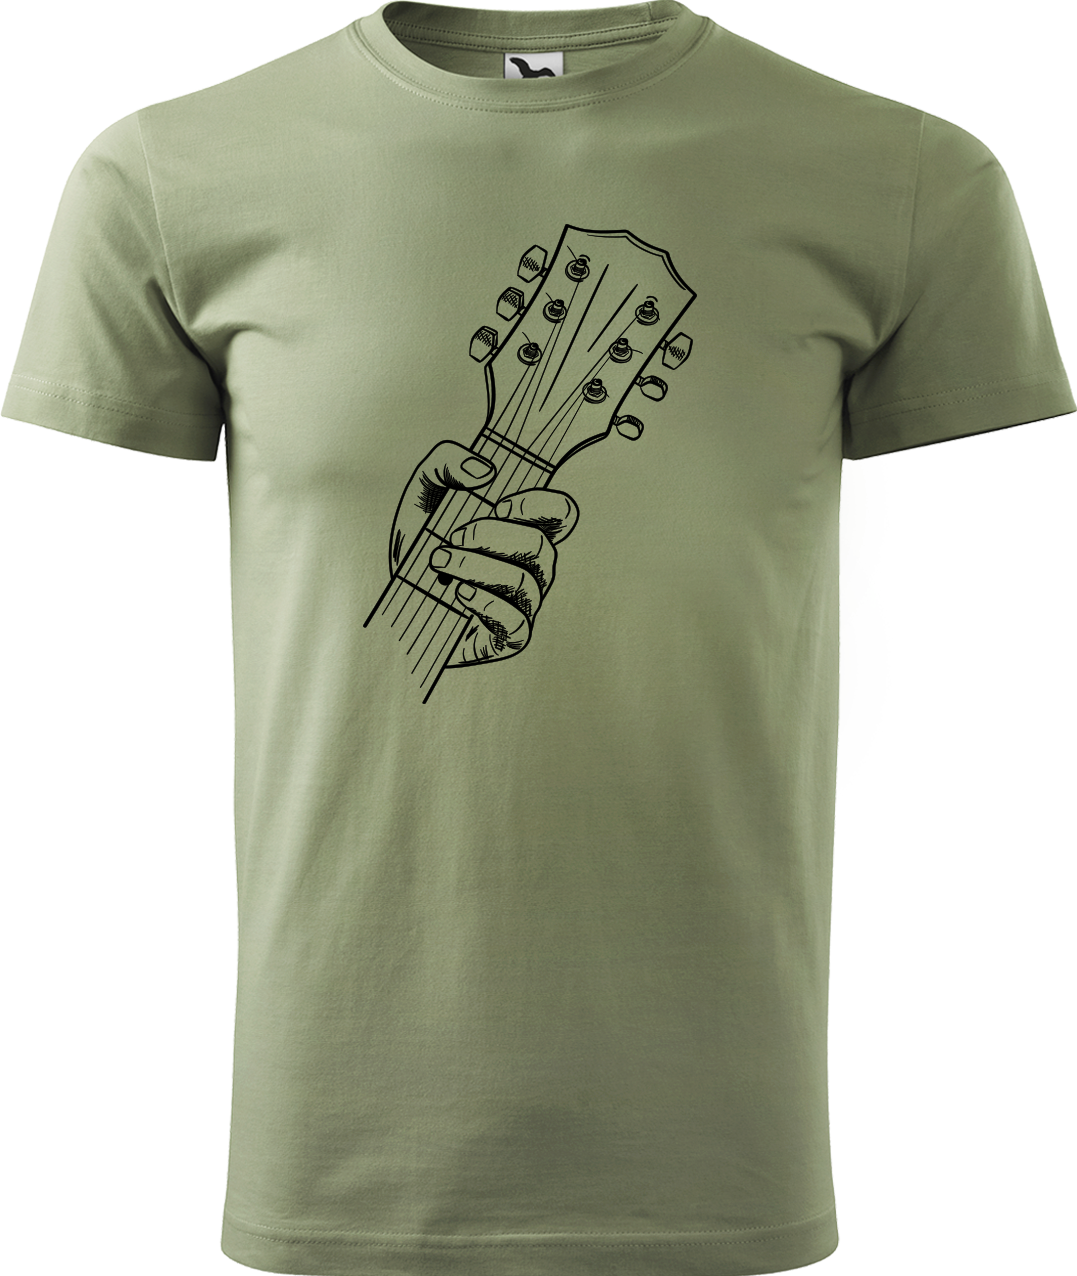 Pánské tričko s kytarou - Hlava kytary Velikost: L, Barva: Světlá khaki (28)